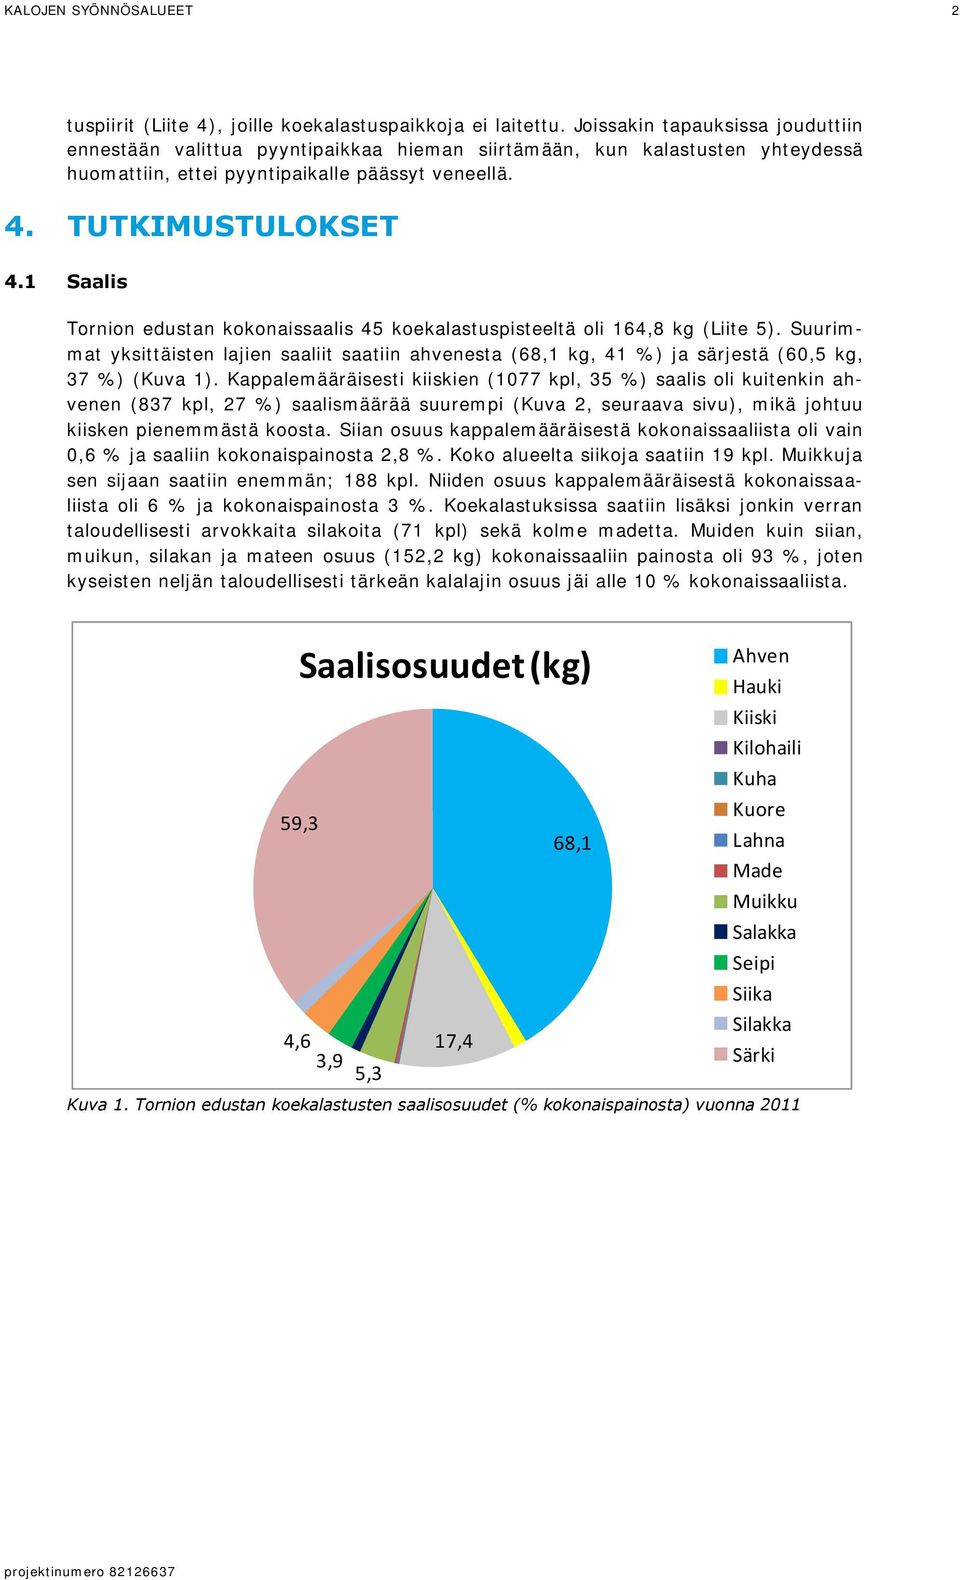 1 Saalis Tornion edustan kokonaissaalis 45 koekalastuspisteeltä oli 164,8 kg (Liite 5). Suurimmat yksittäisten lajien saaliit saatiin ahvenesta (68,1 kg, 41 %) ja särjestä (60,5 kg, 37 %) (Kuva 1).